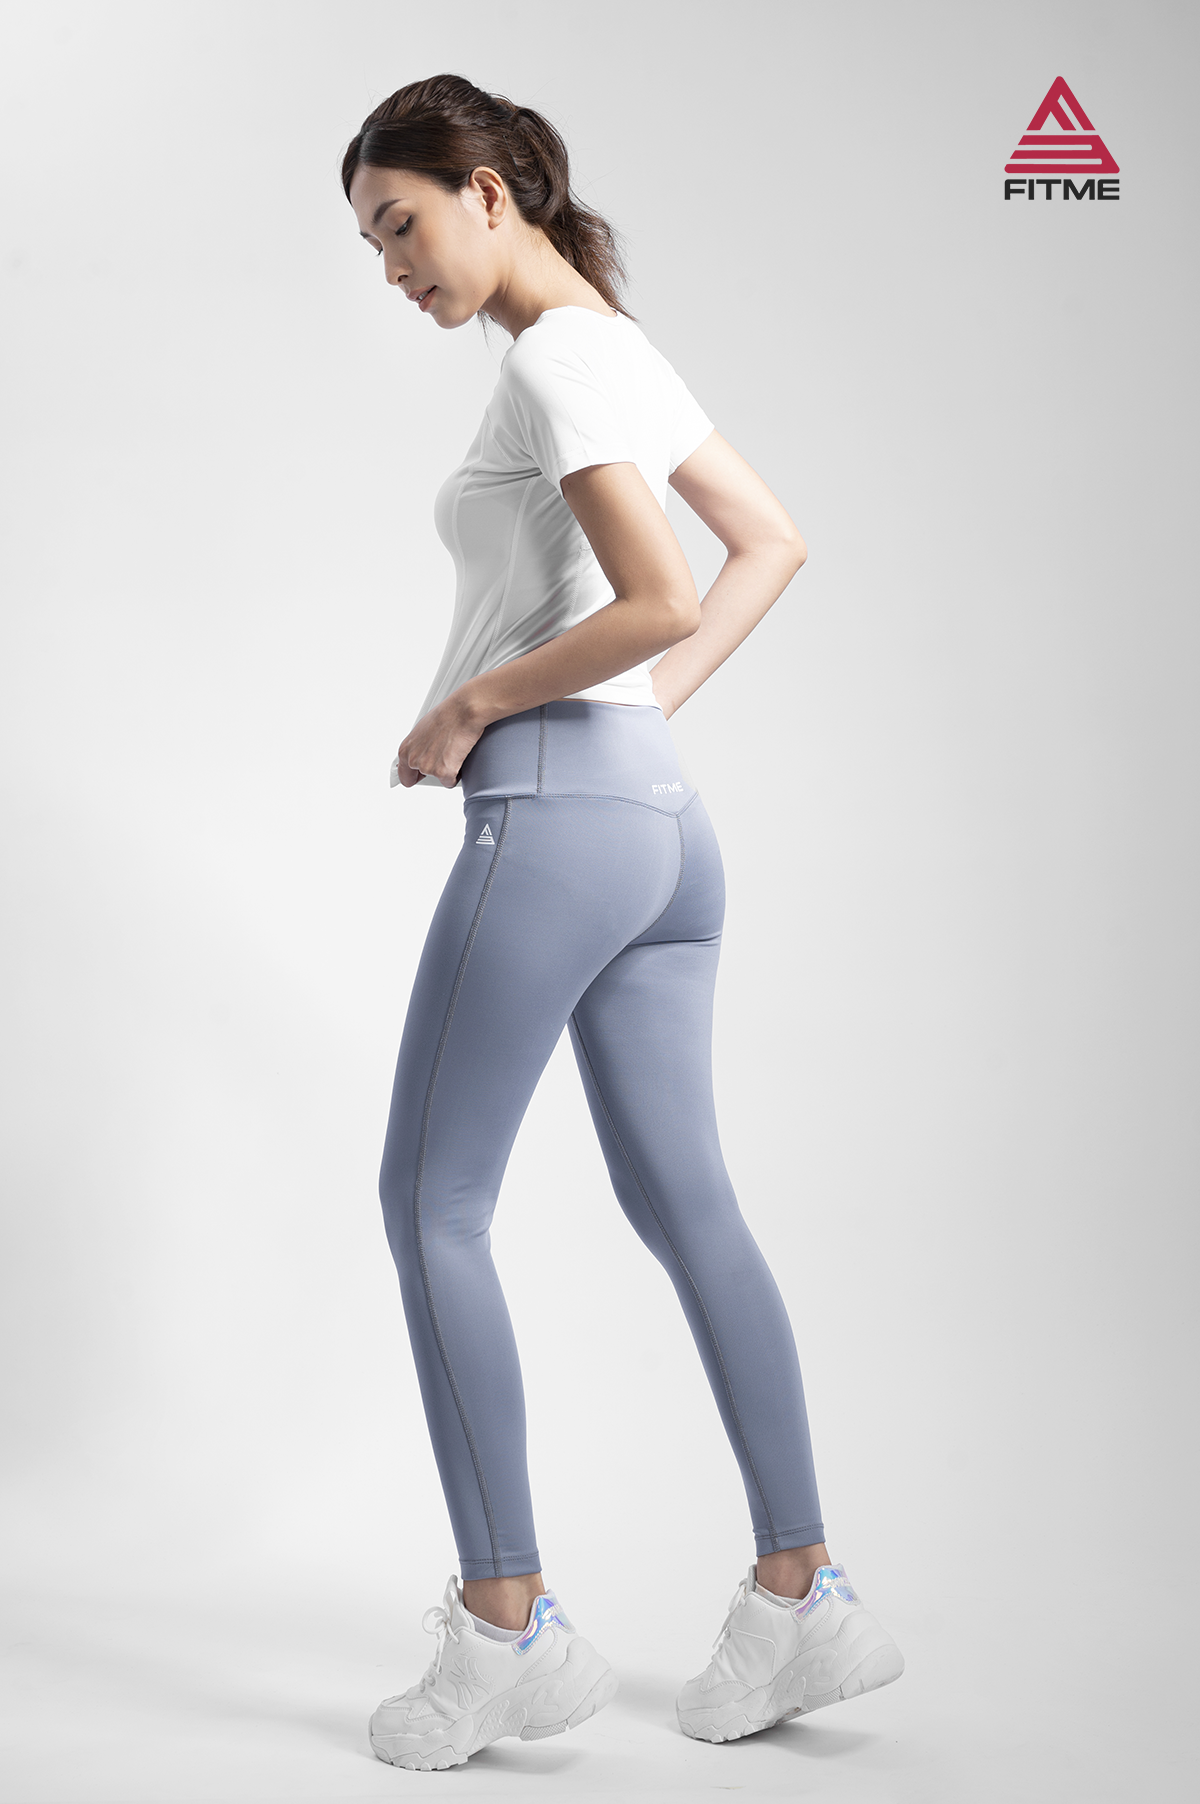 Quần legging nữ Fitme Zeta nâng mông cao cấp chất liệu dày dặn cạp cao chuyên tập gym và tập yoga